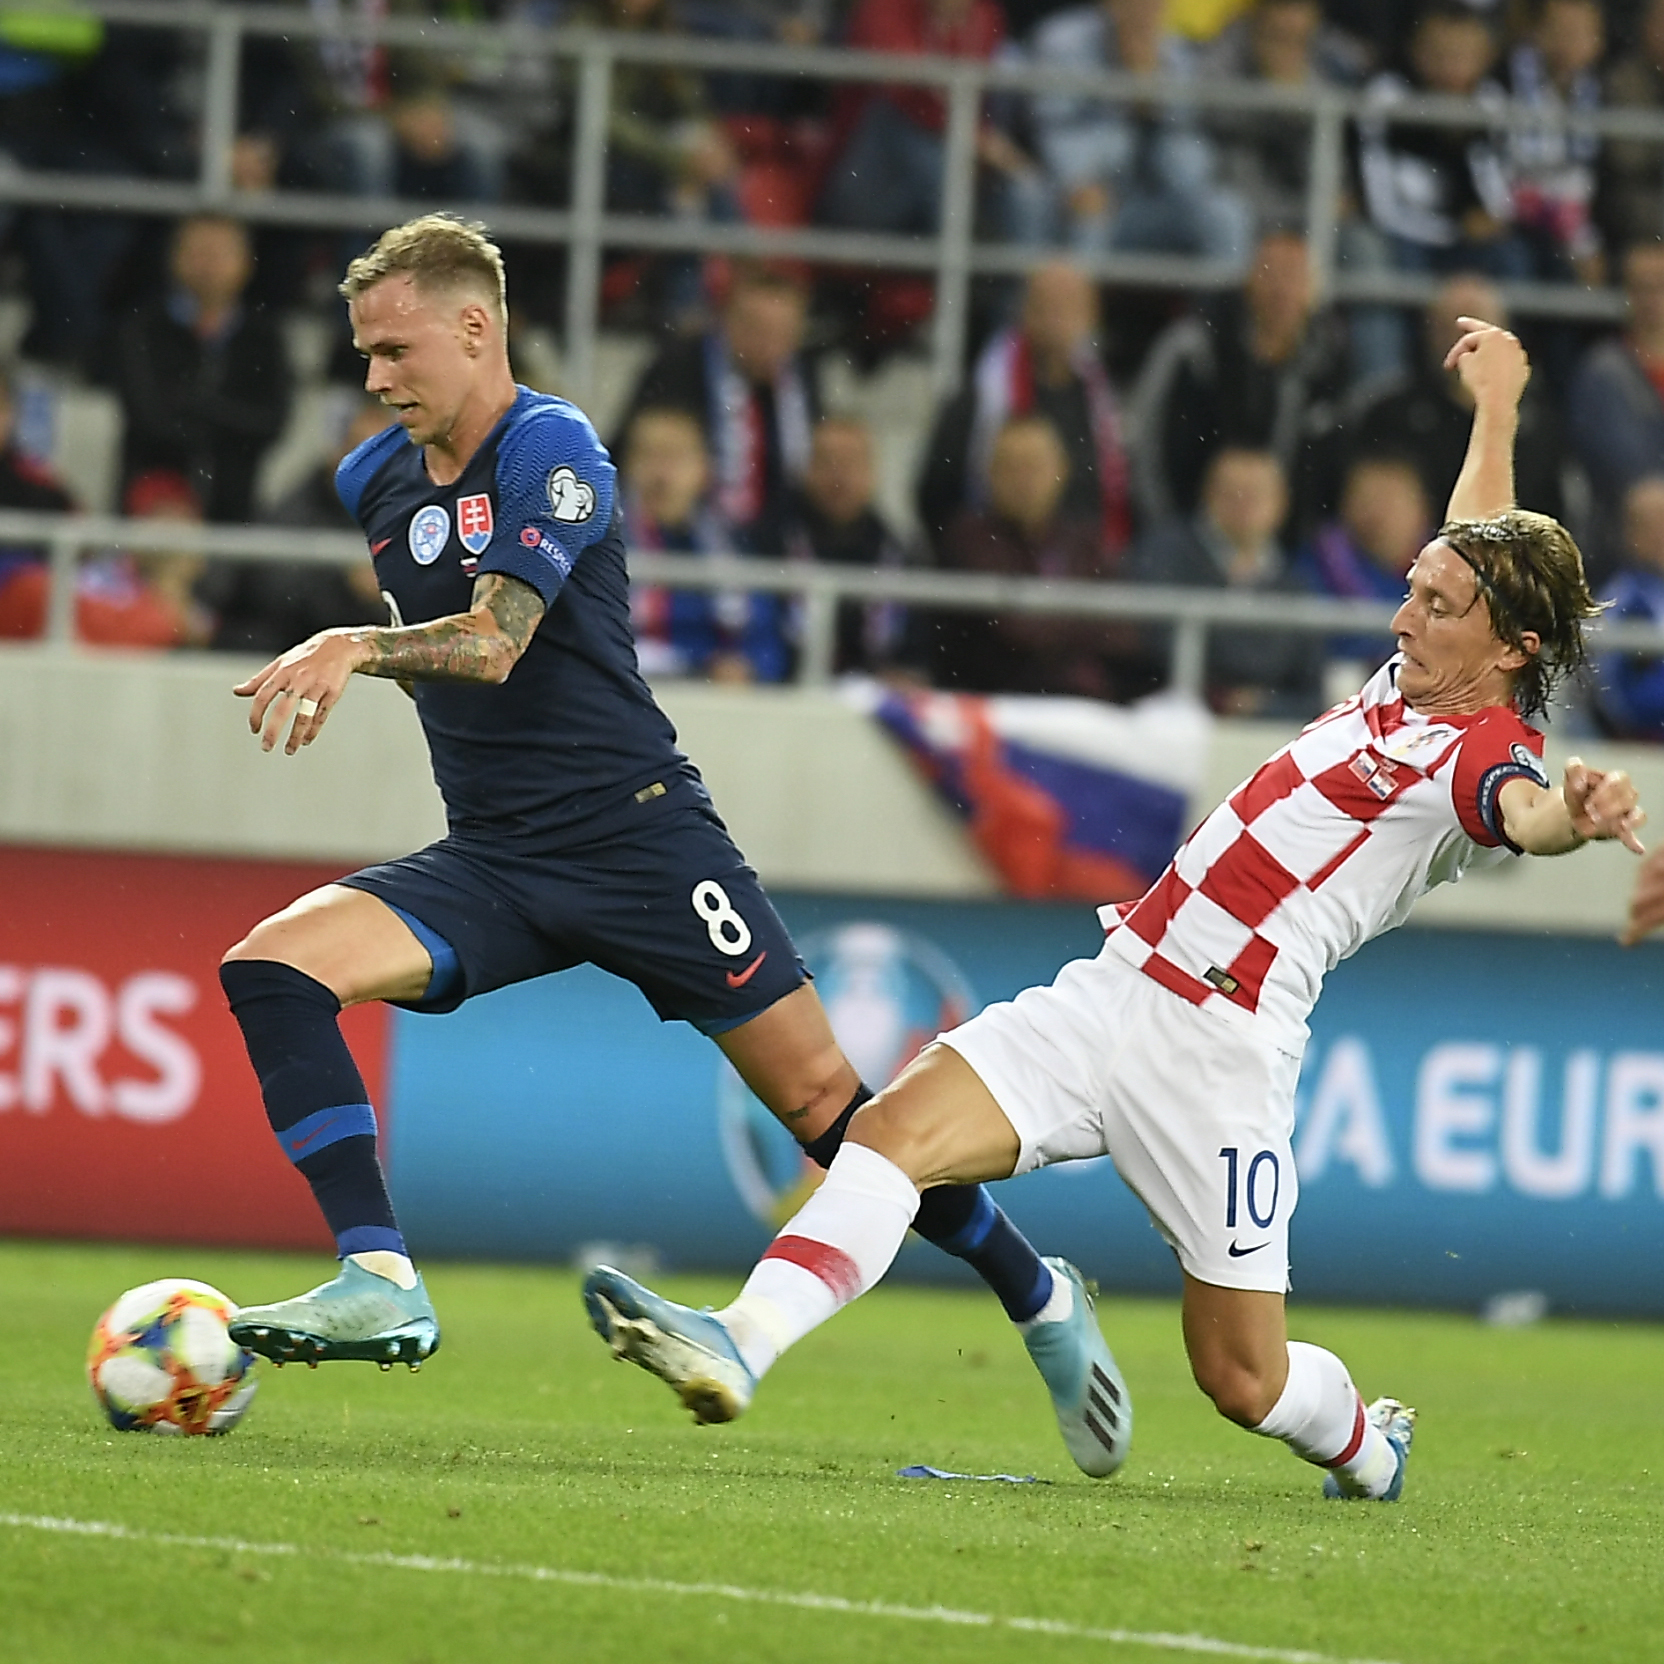 Na snímke slovenský futbalový reprezentant Ondrej Duda (vľavo) a kapitán chorvátskej reprezentácie Luka Modrič bojujú o loptu počas kvalifikačného zápasu E- skupiny EURO 2020 Slovensko - Chorvátsko v Trnave v piatok 6. septembra 2019.